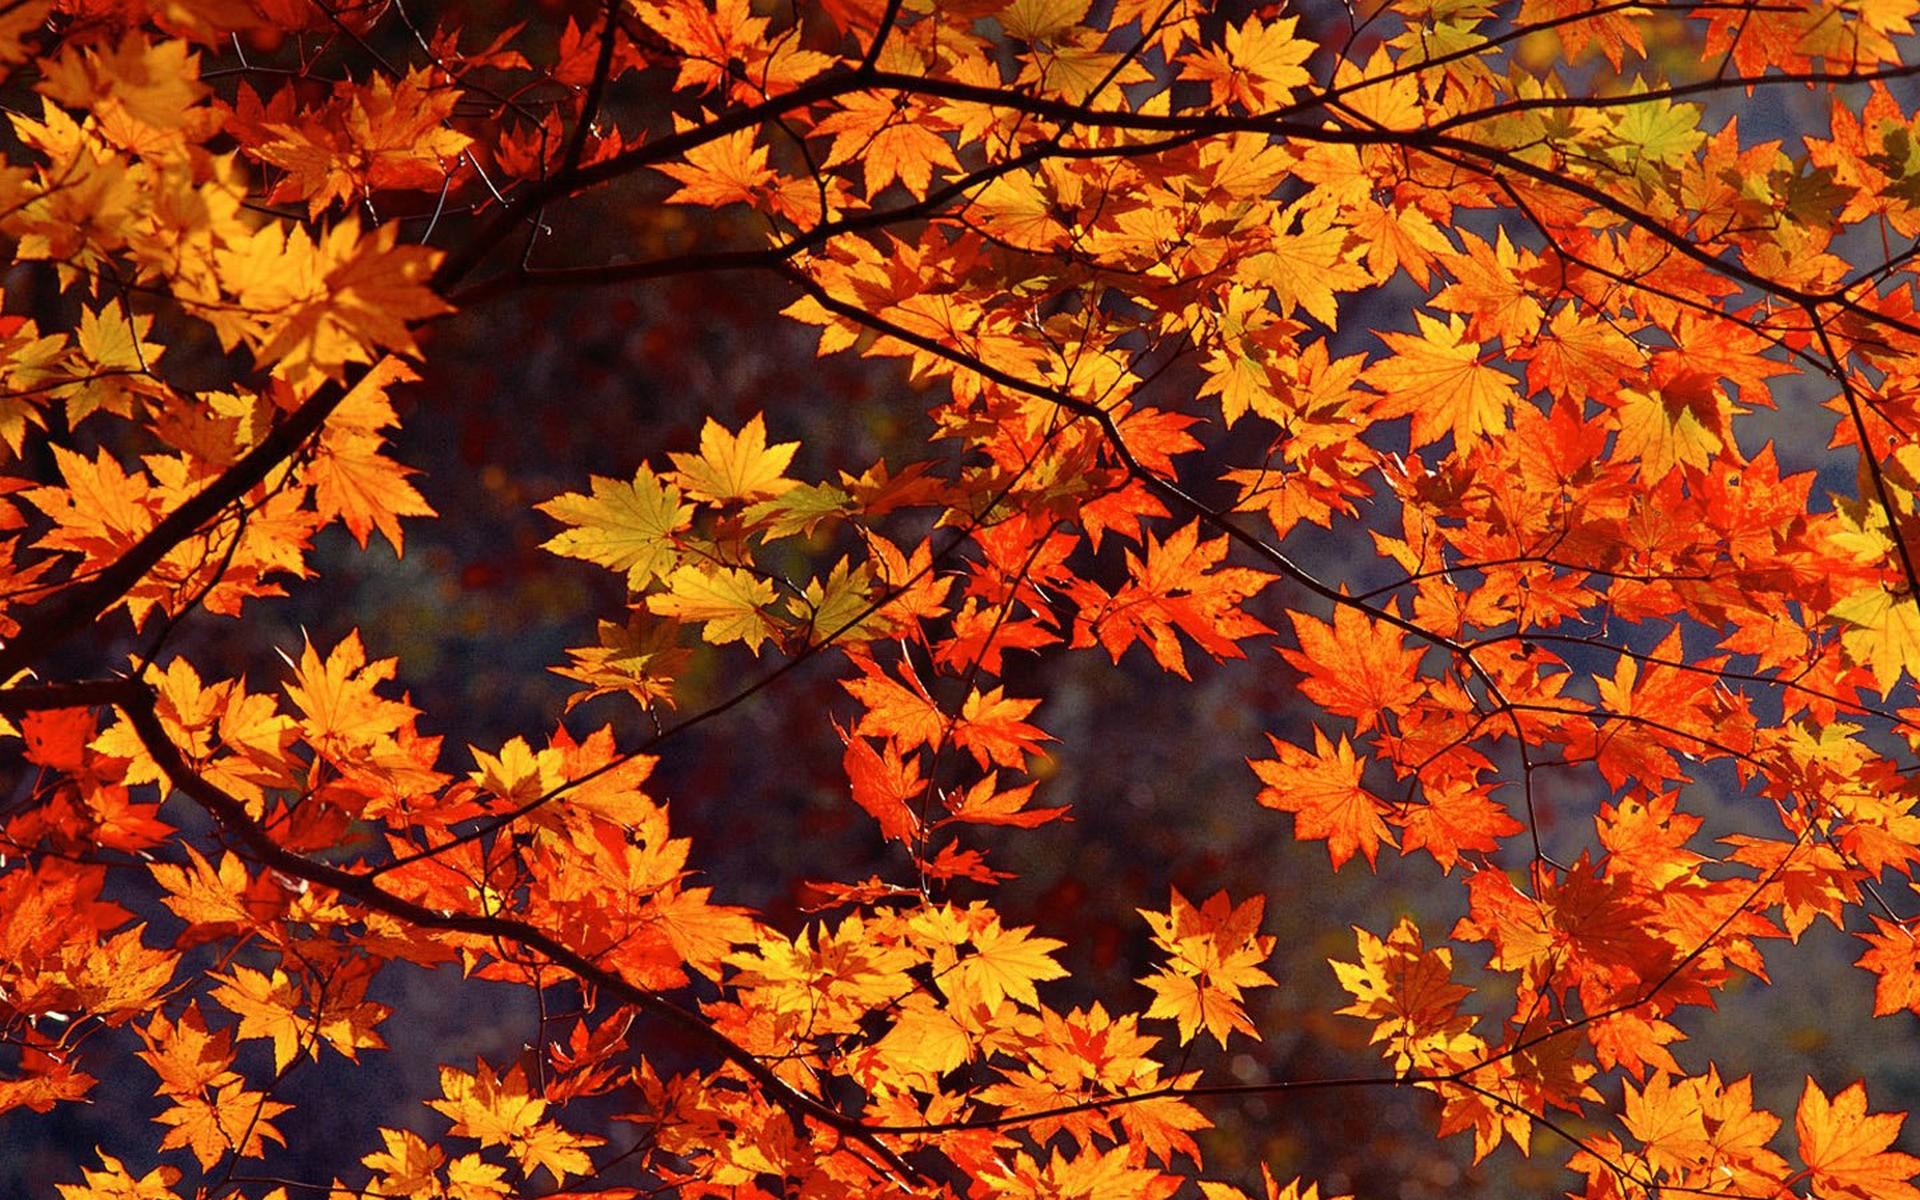 Japan Autumn wallpaper. Japan Autumn